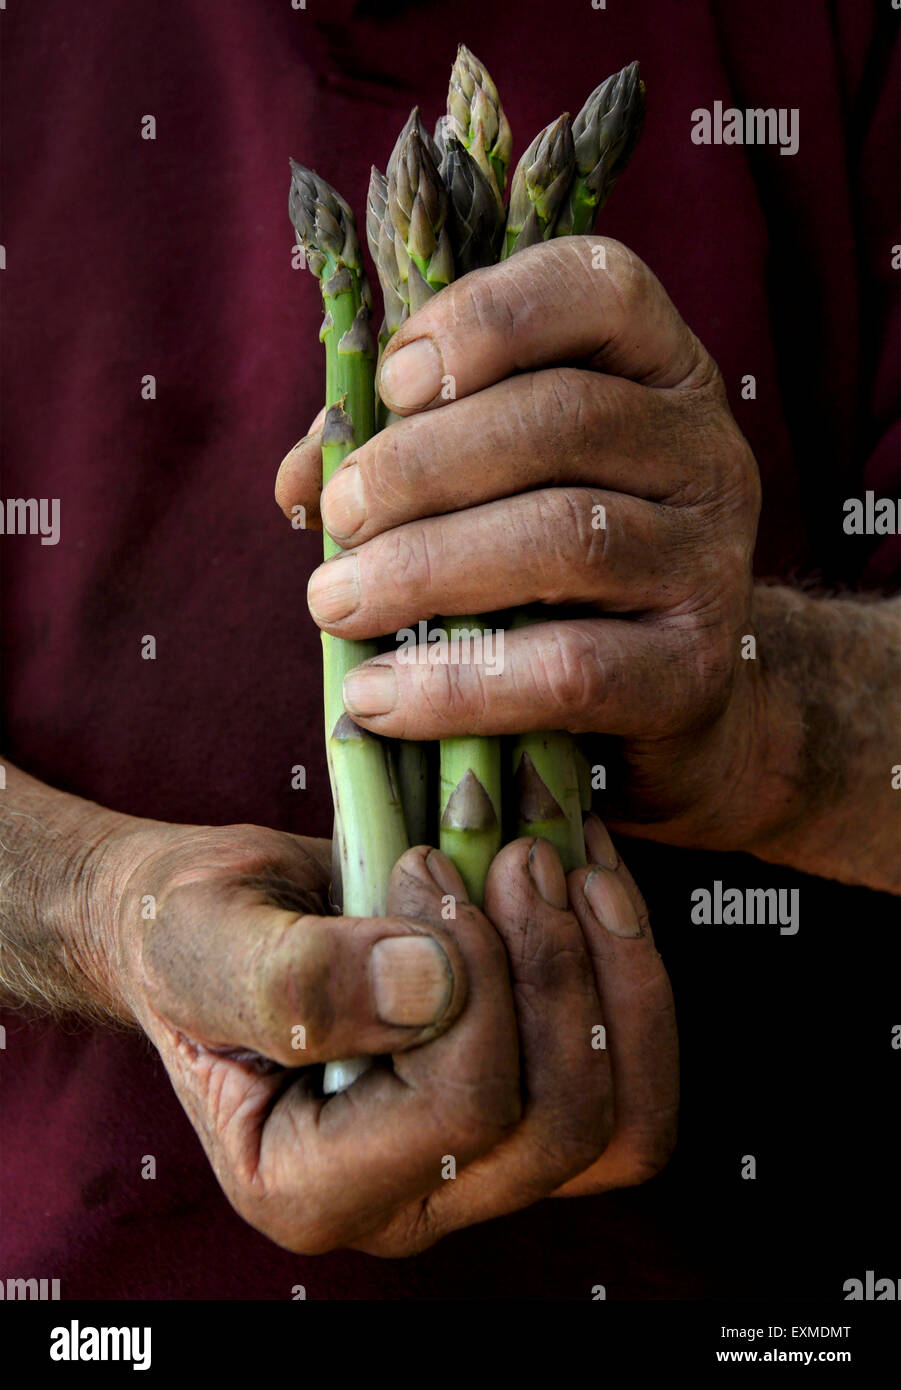 A farmer or gardener cradling a bunch of asparagus Stock Photo